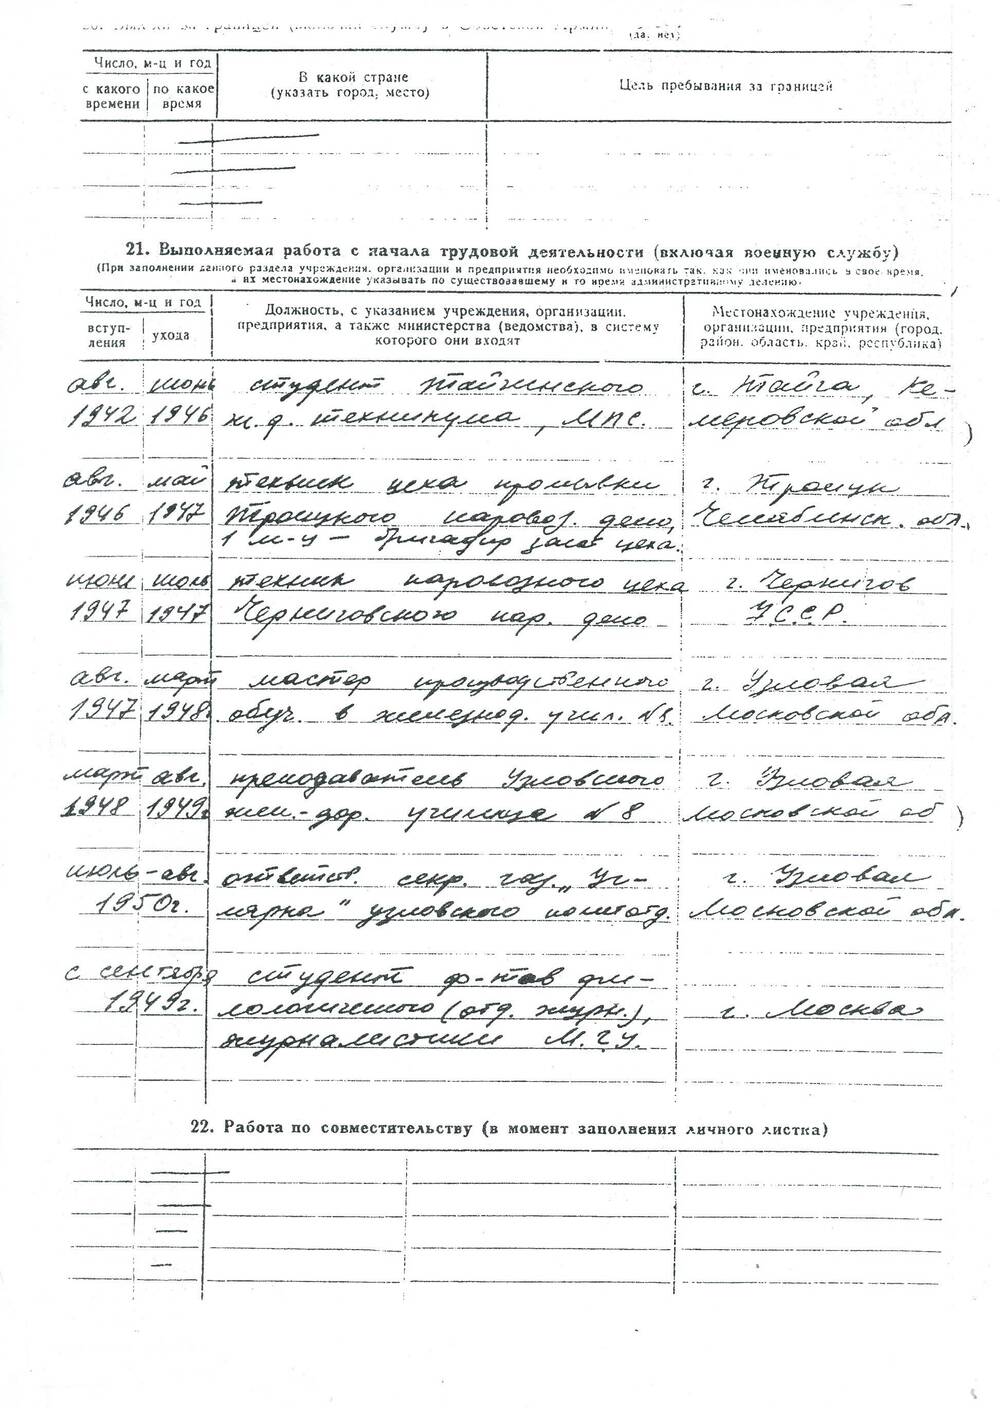 Копия личного листка по учету кадров В.А. Чивилихина.